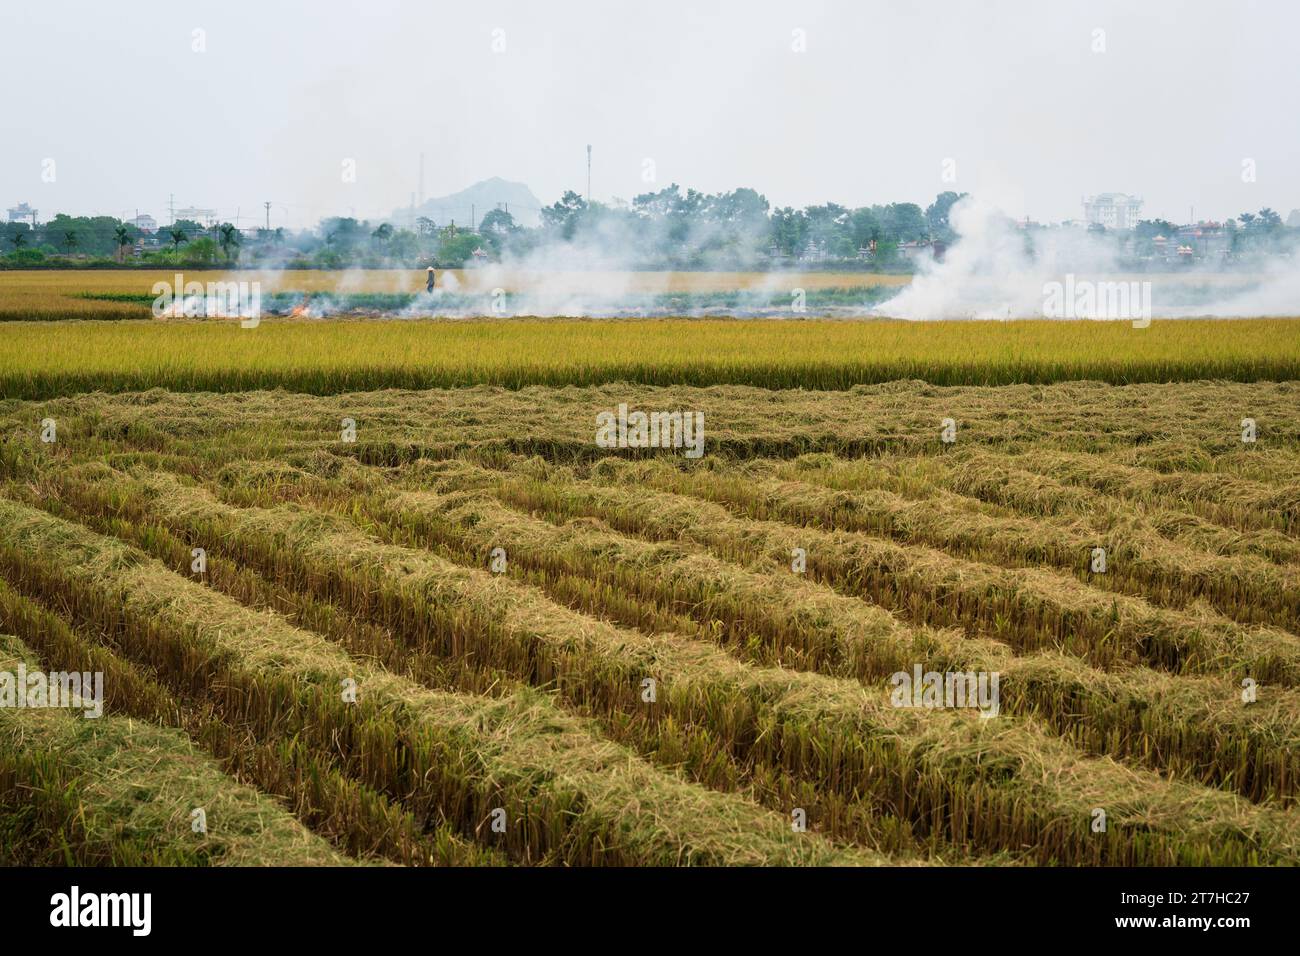 La combustione del campo di riso dopo il raccolto nella cosiddetta stagione delle fiamme, provocando smog e foschia, Ninh Binh, Vietnam Foto Stock